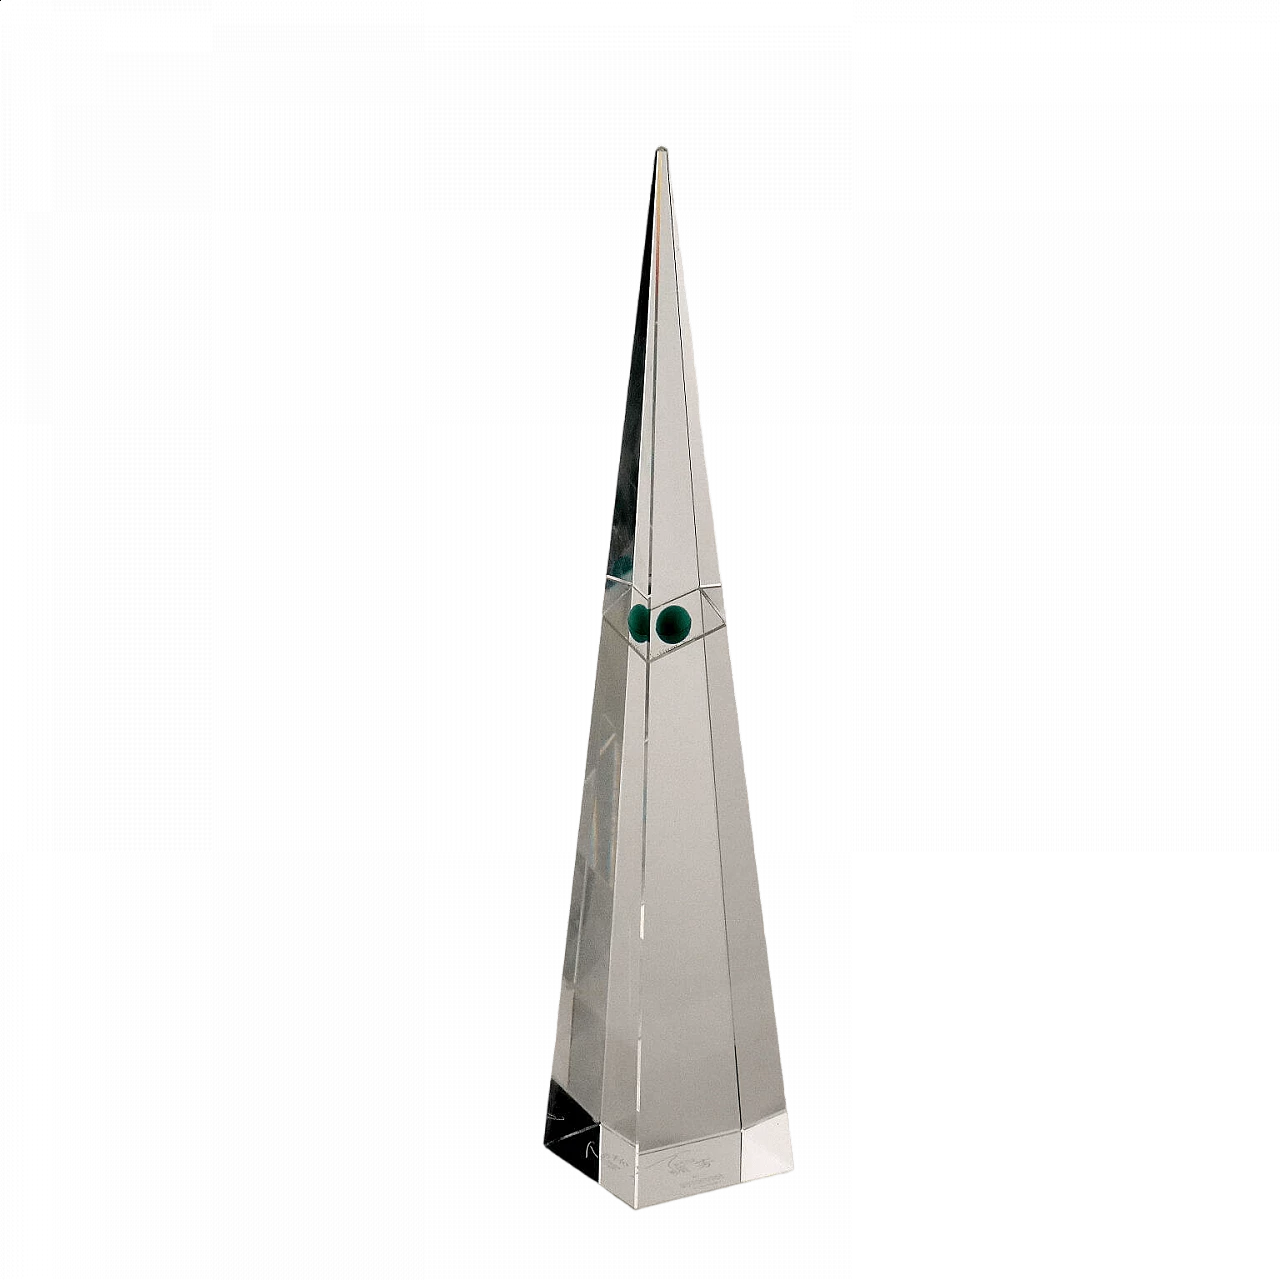 Hong Kong crystal tower obelisk by Tsang for Swarowski selection, 1997 10